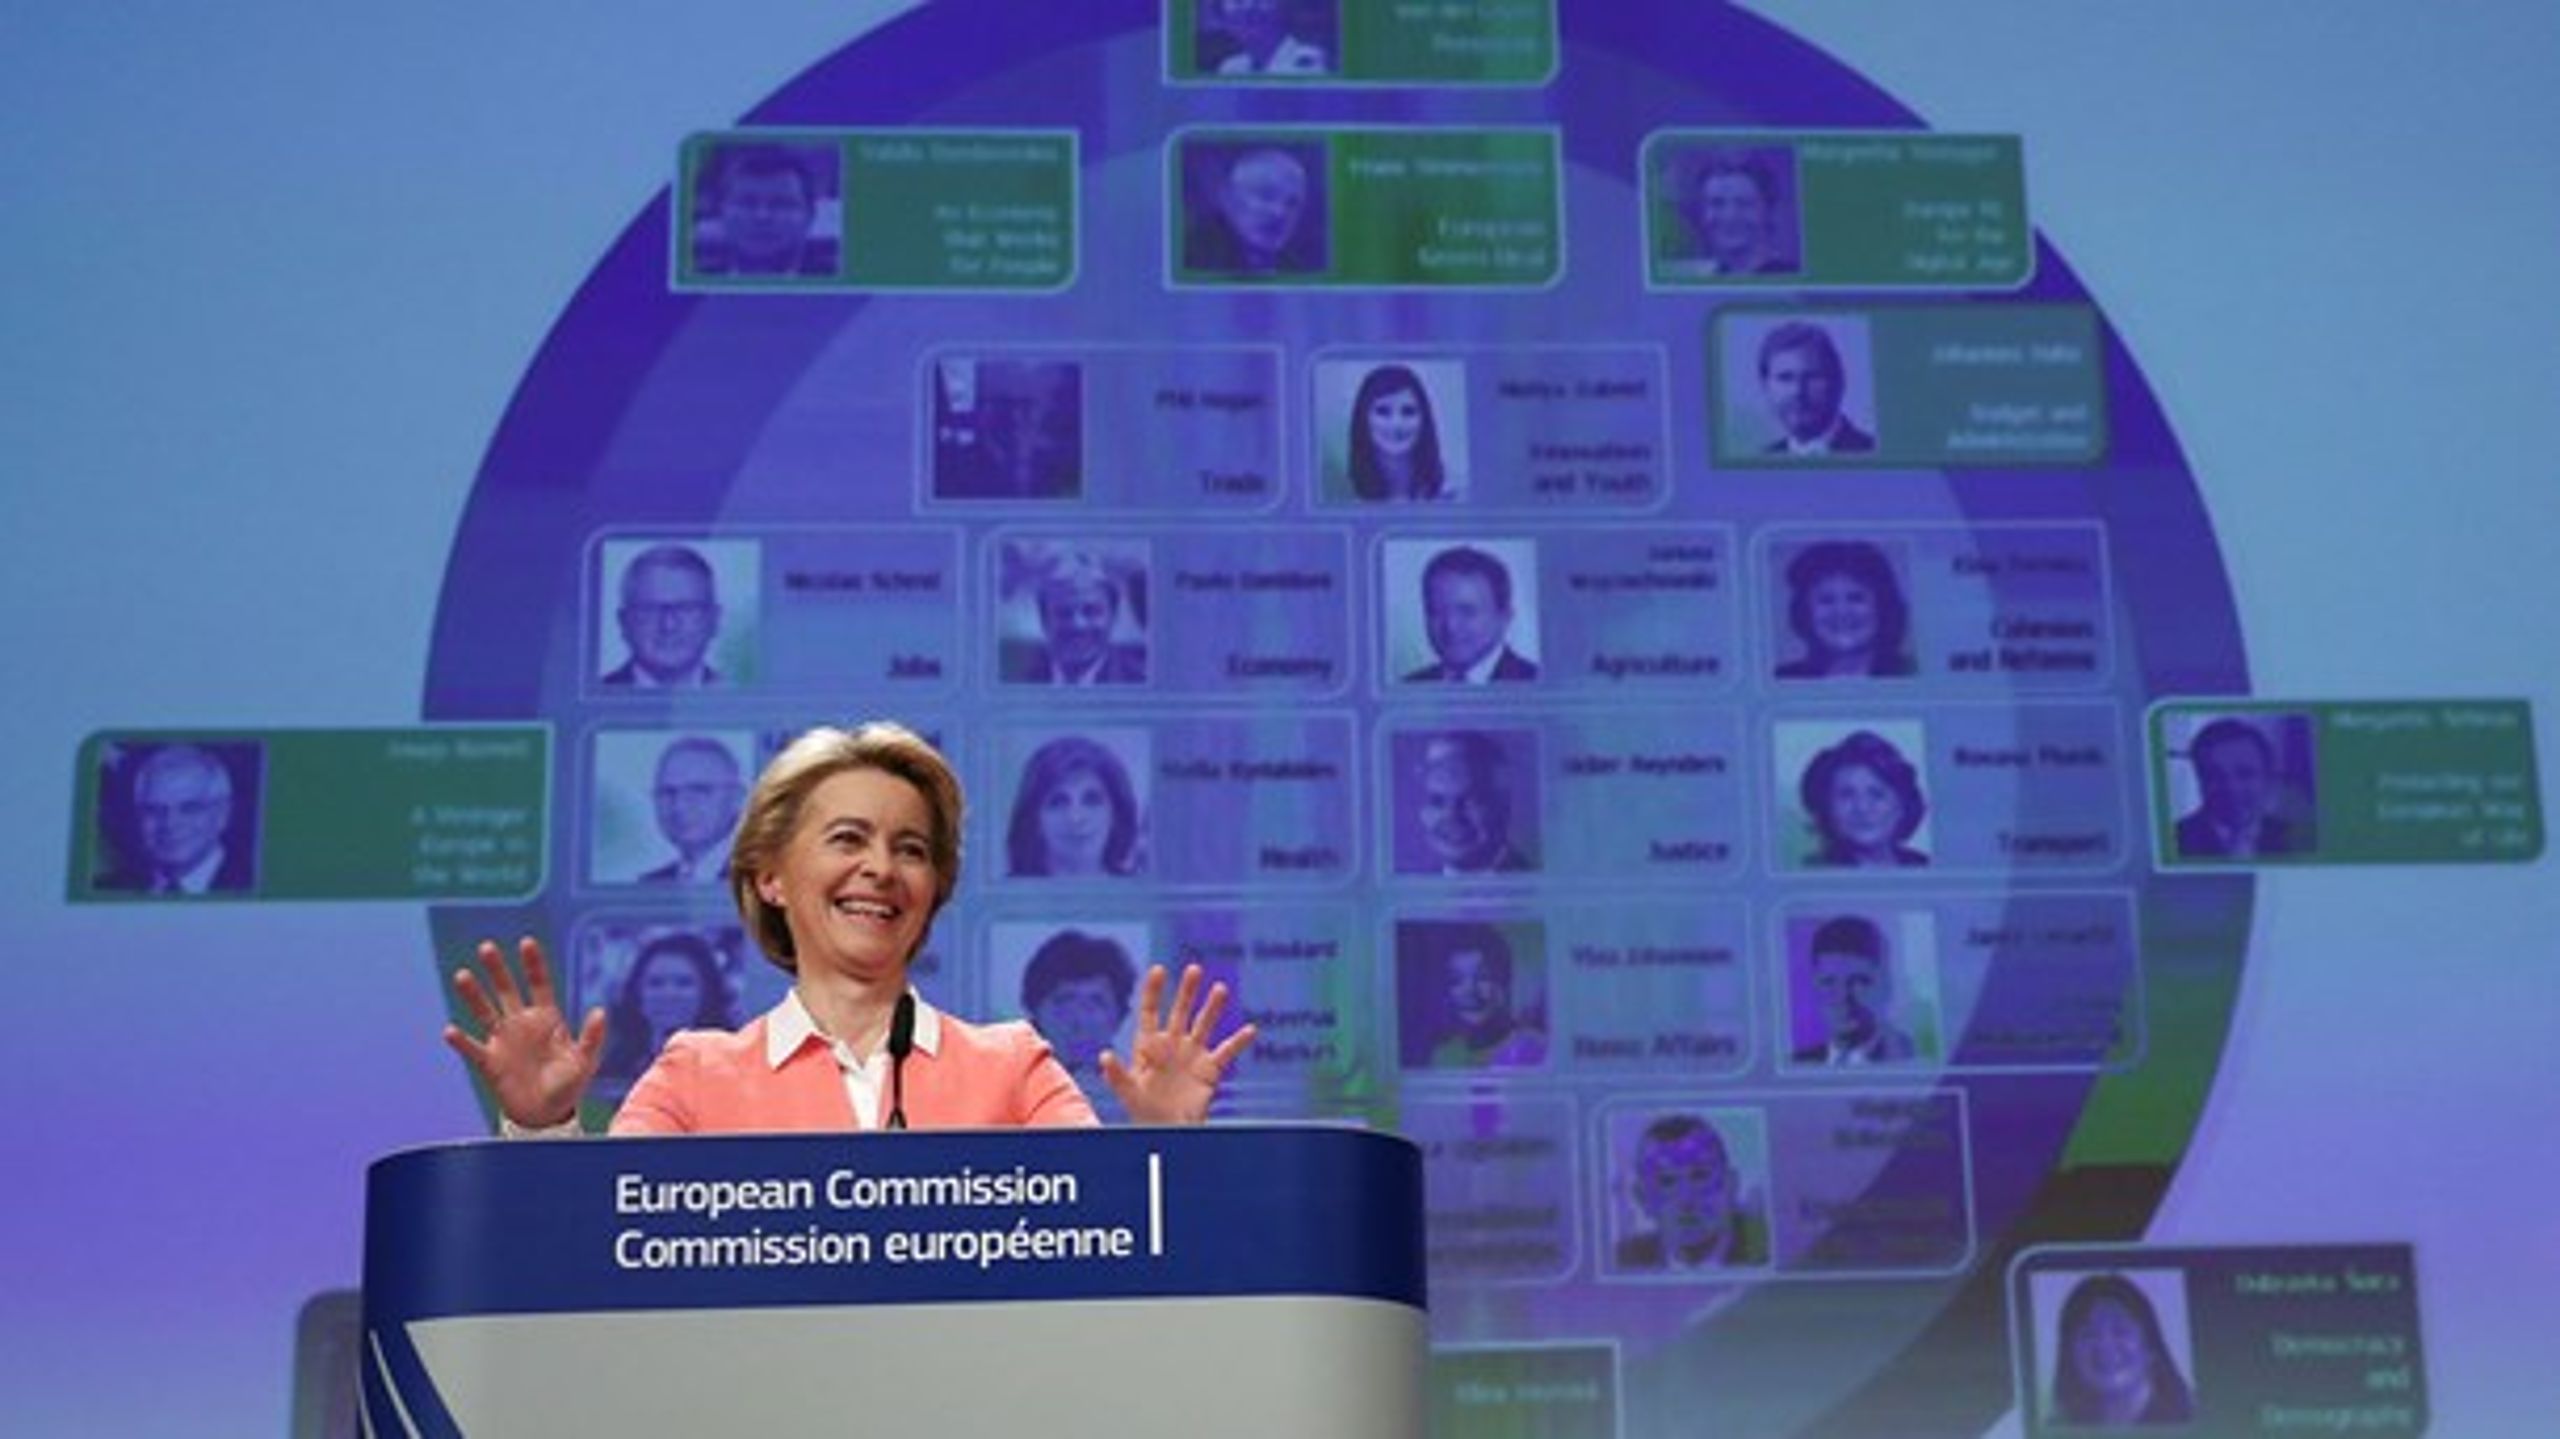 For godt en uge siden præsenterede formanden for EU-Kommissionen, Ursula von der Leyen, sit nye hold af kommissærer og deres arbejdsopgaver.